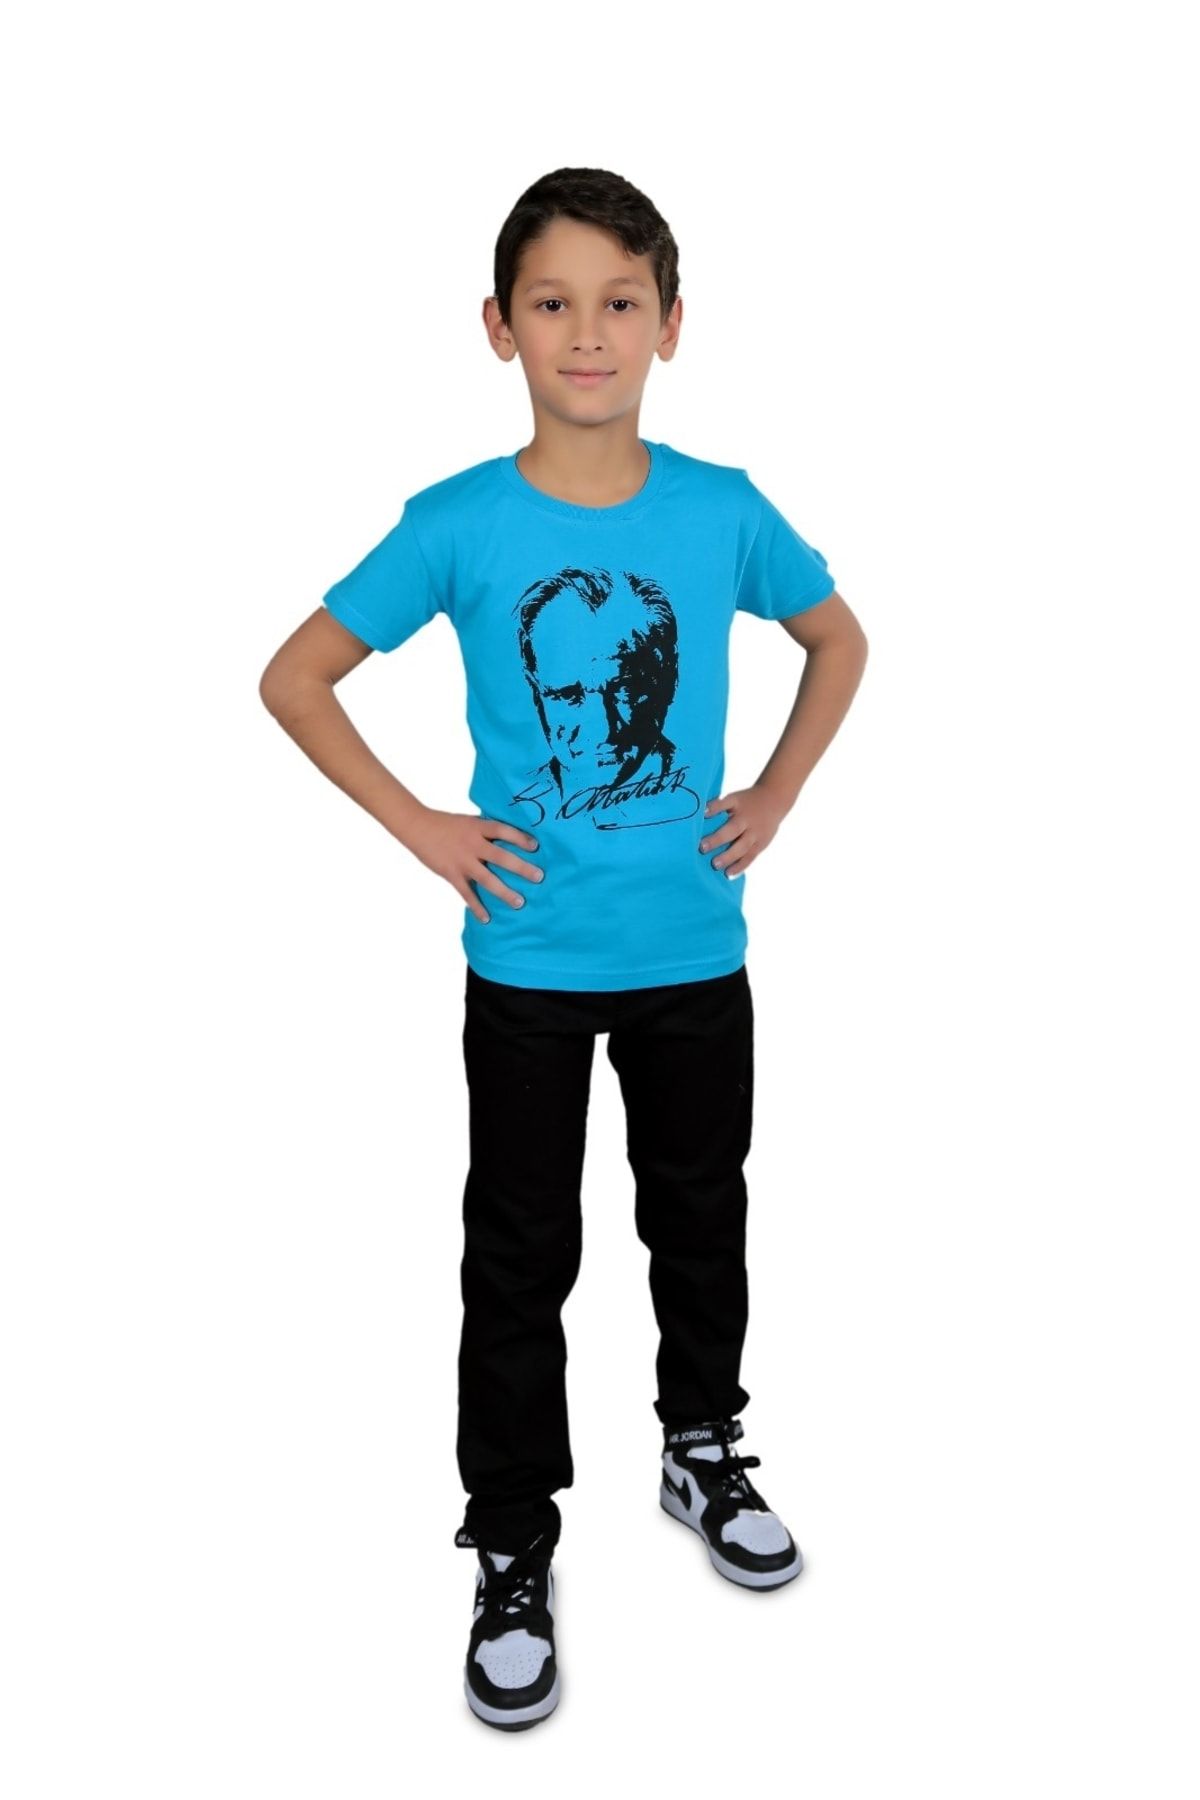 FATELLA Unisex Çocuk Atatürk Baskılı Türk Bayraklı Pamuklu T-shirt 23 Nisan 29 Ekim 10 Kasım